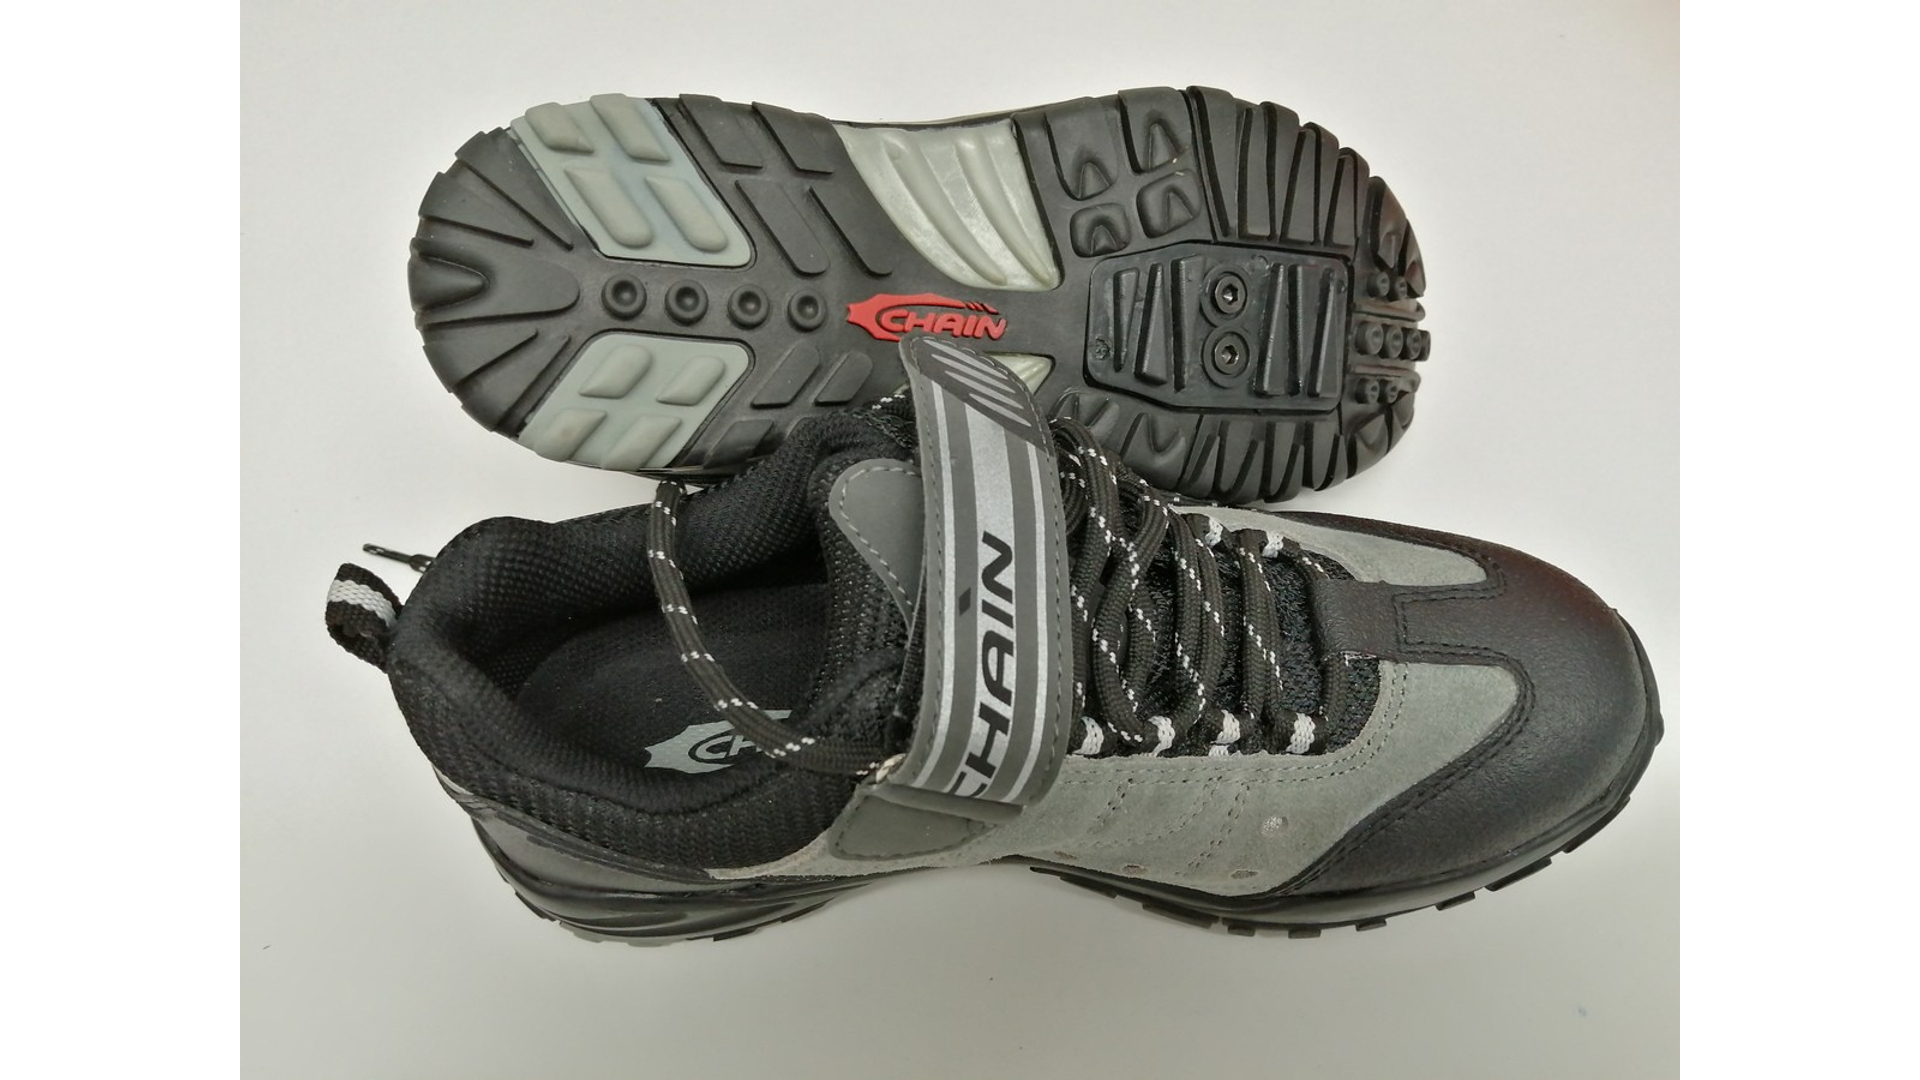 Chain MTB Fun kerékpáros cipő, SPD kompatibilis, black/grey, 38